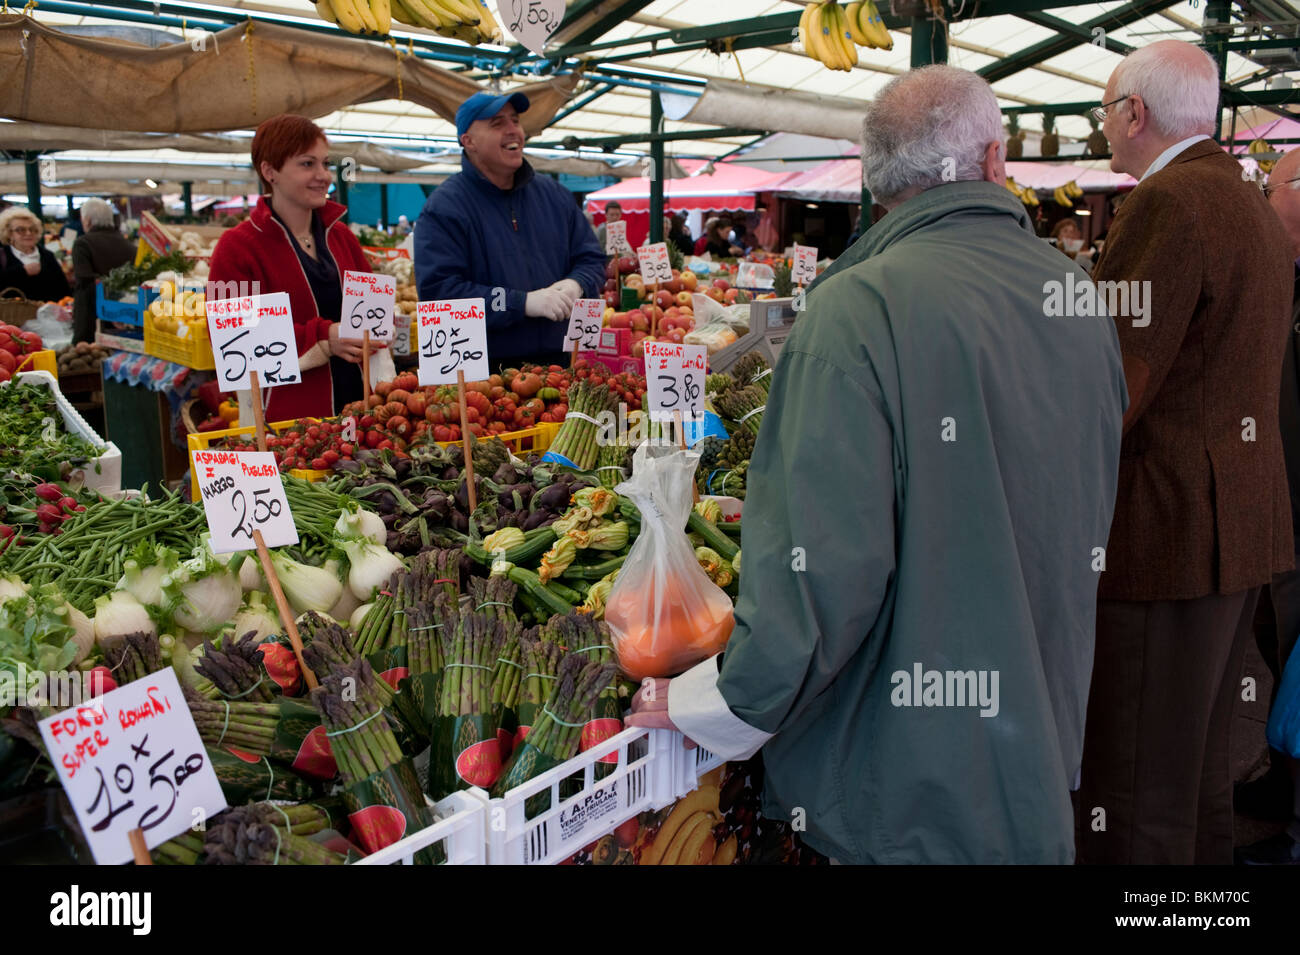 Mercado de frutas y verduras al aire libre, cerca del Puente Rialto en Venecia Italia Foto de stock